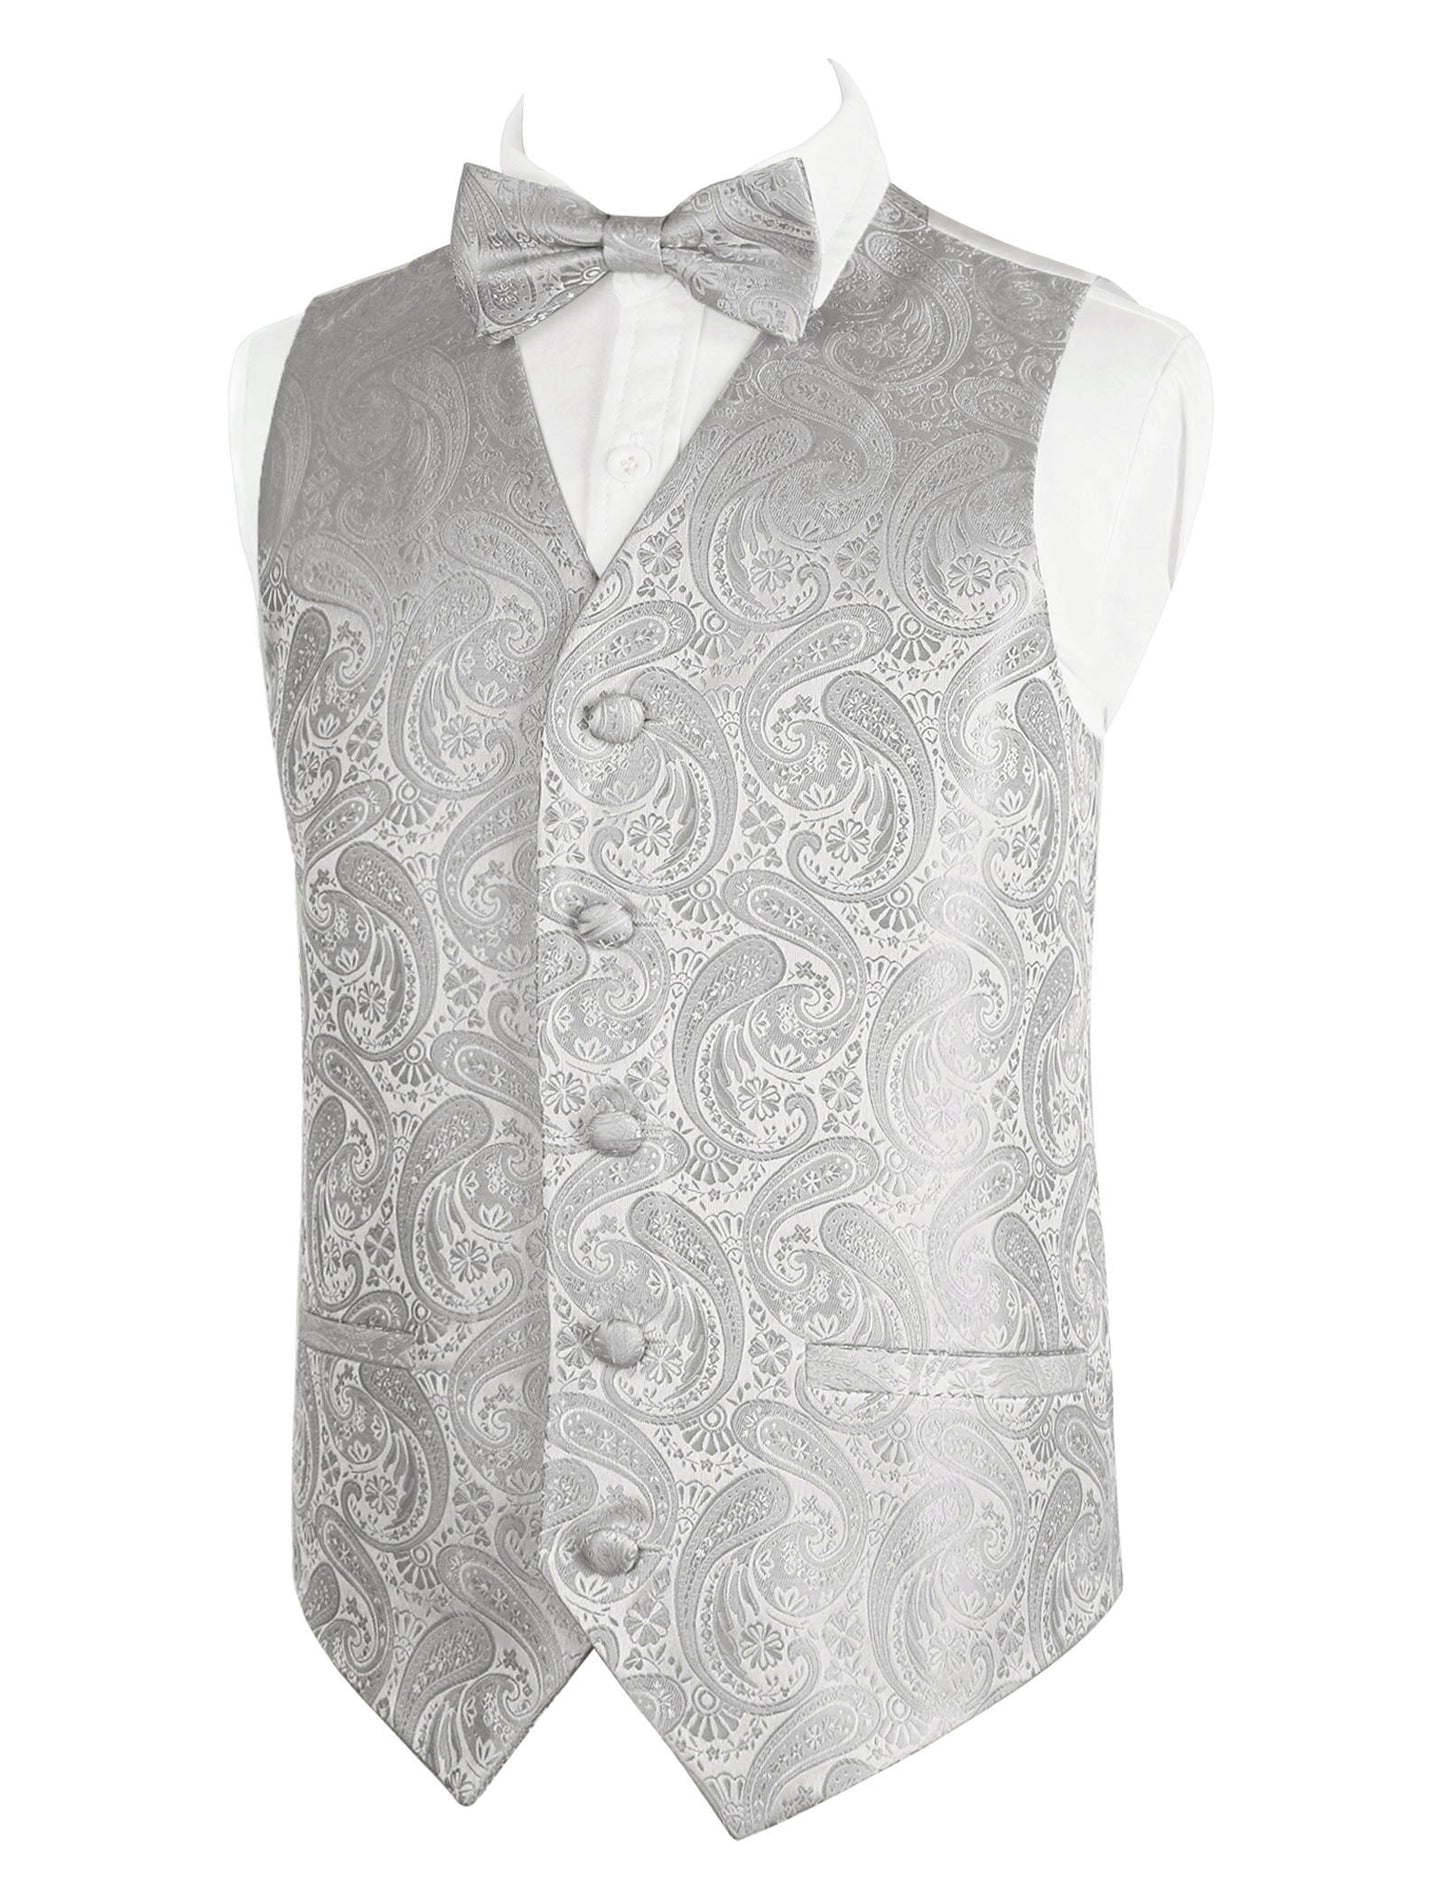 Boy's Paisley Jacquard Pre-Tied Bow Tie with Classic Floral Dress Suit Vest Set, 077-Silver